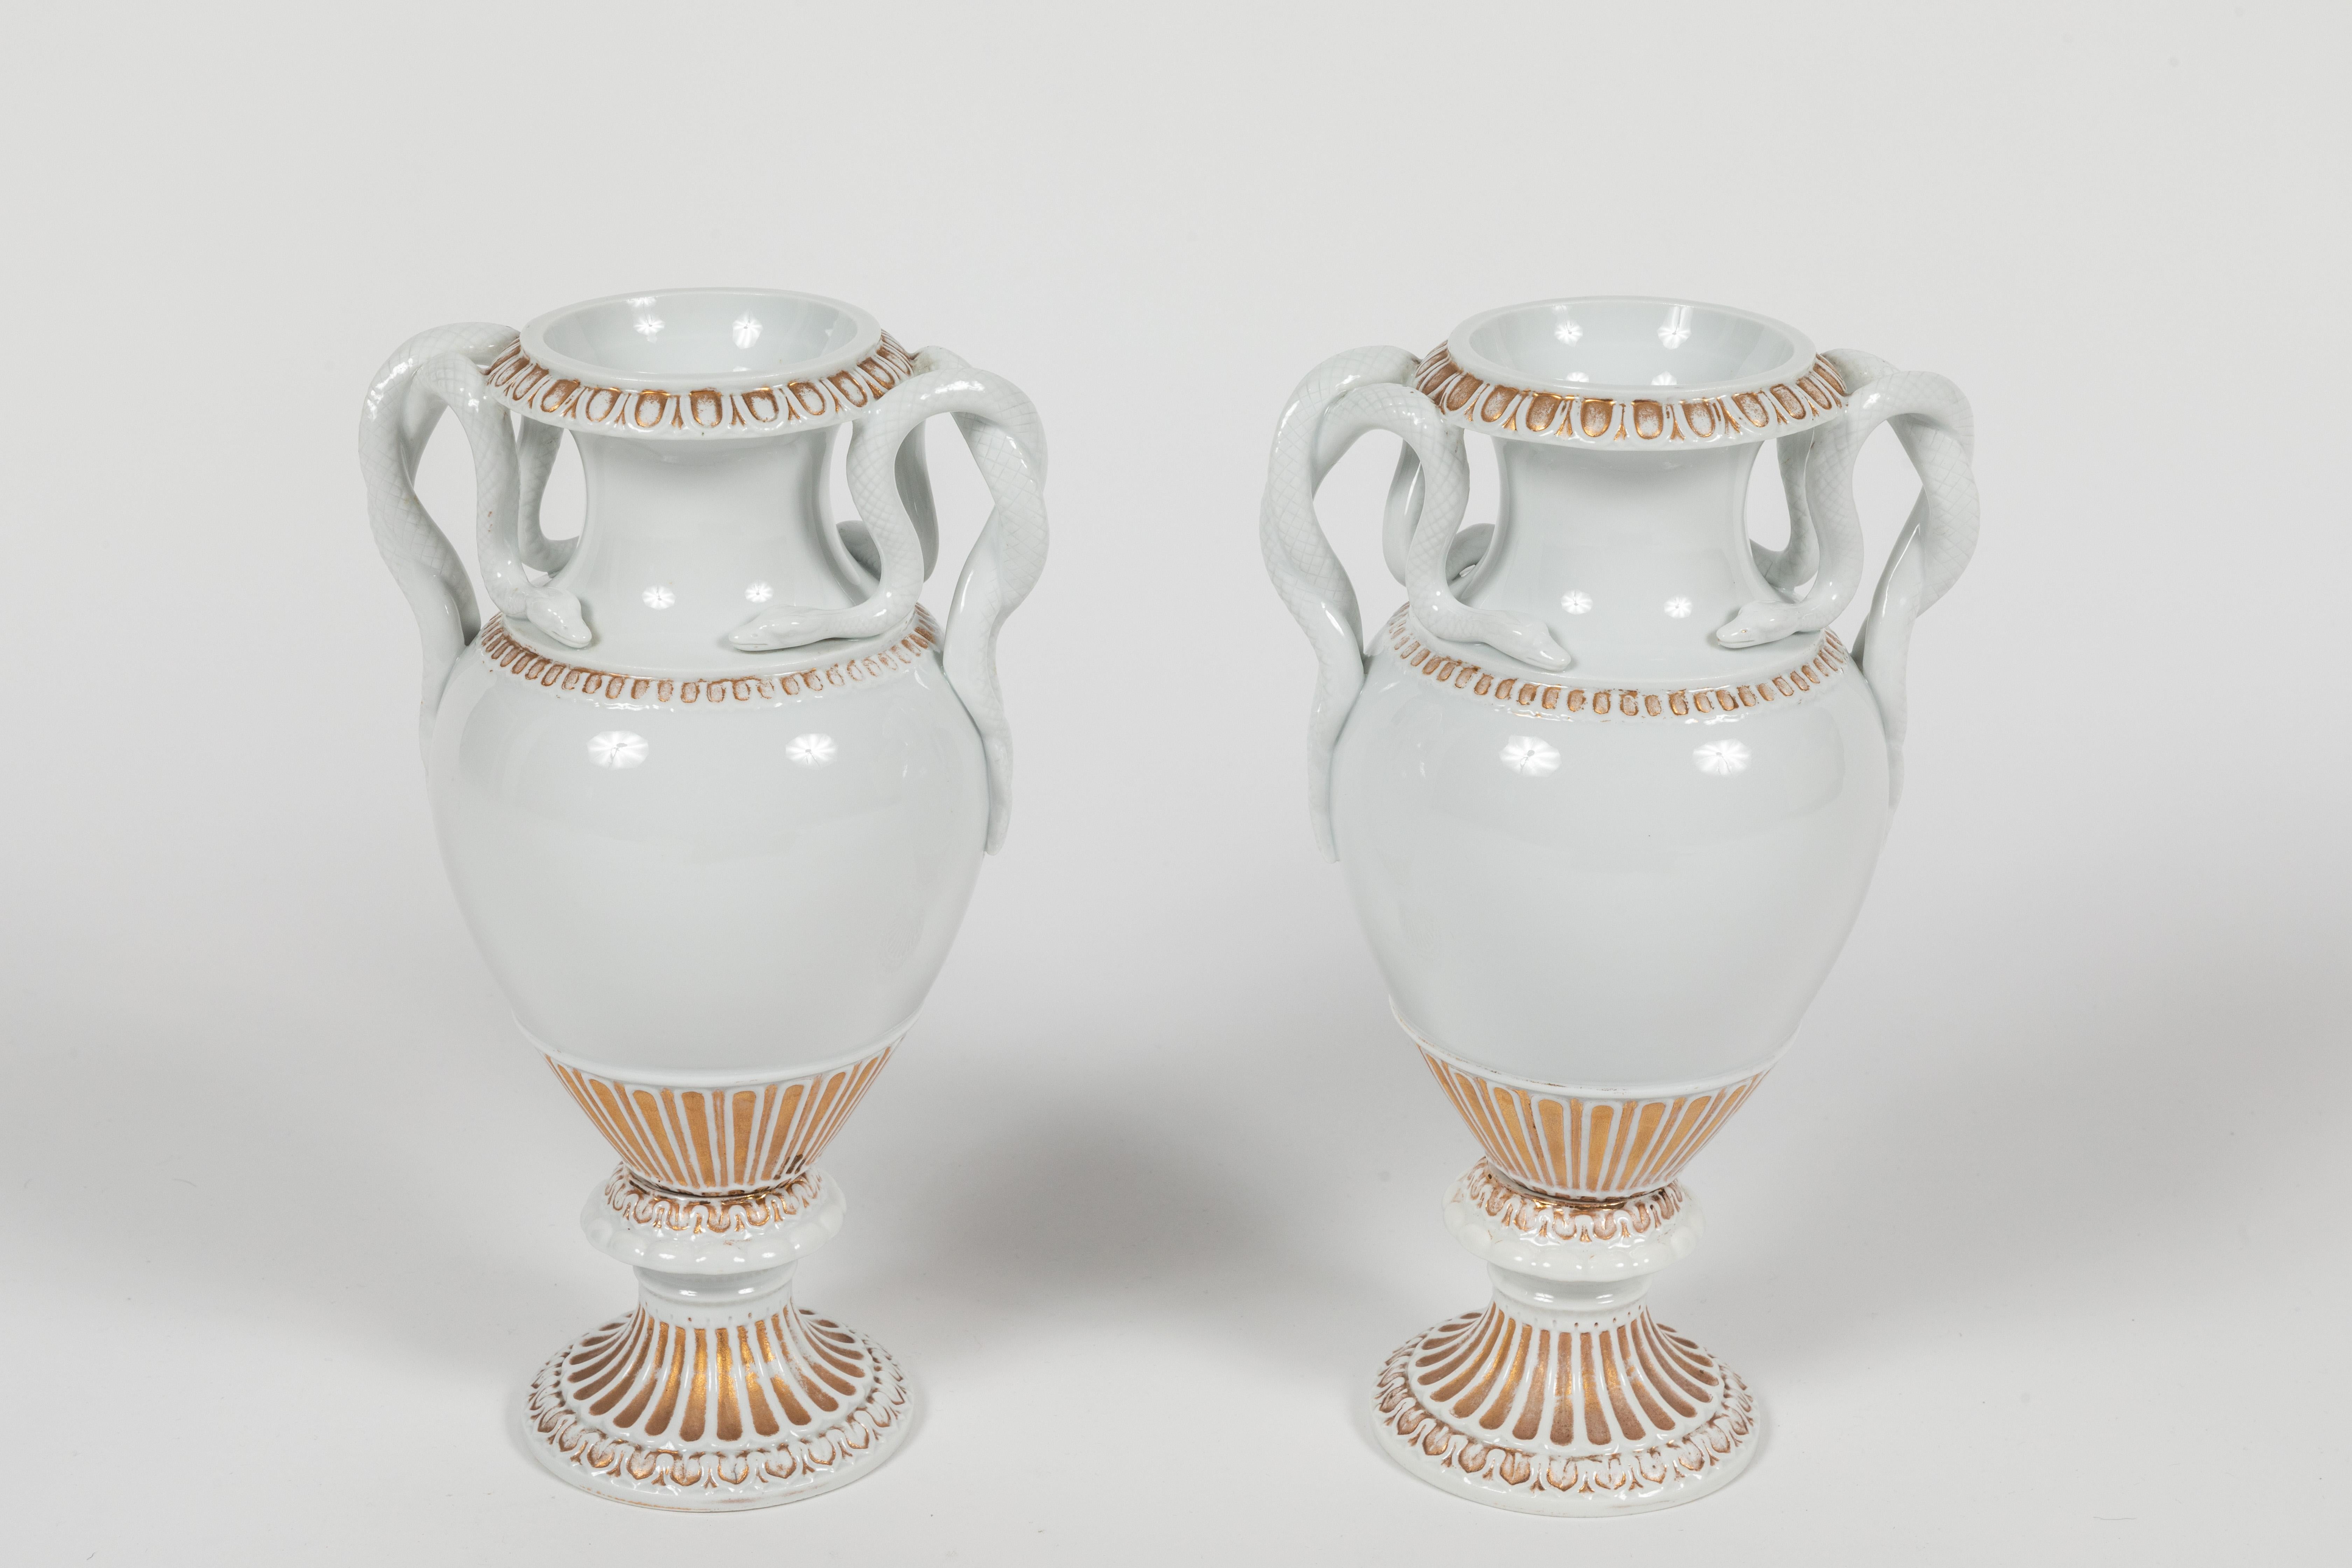 Paire d'urnes Meissen élégantes et chics en porcelaine blanche émaillée classique avec des accents dorés. Ces urnes sont de forme classique et présentent des serpents entrelacés en guise de poignées. Un design intemporel qui s'intègre aussi bien